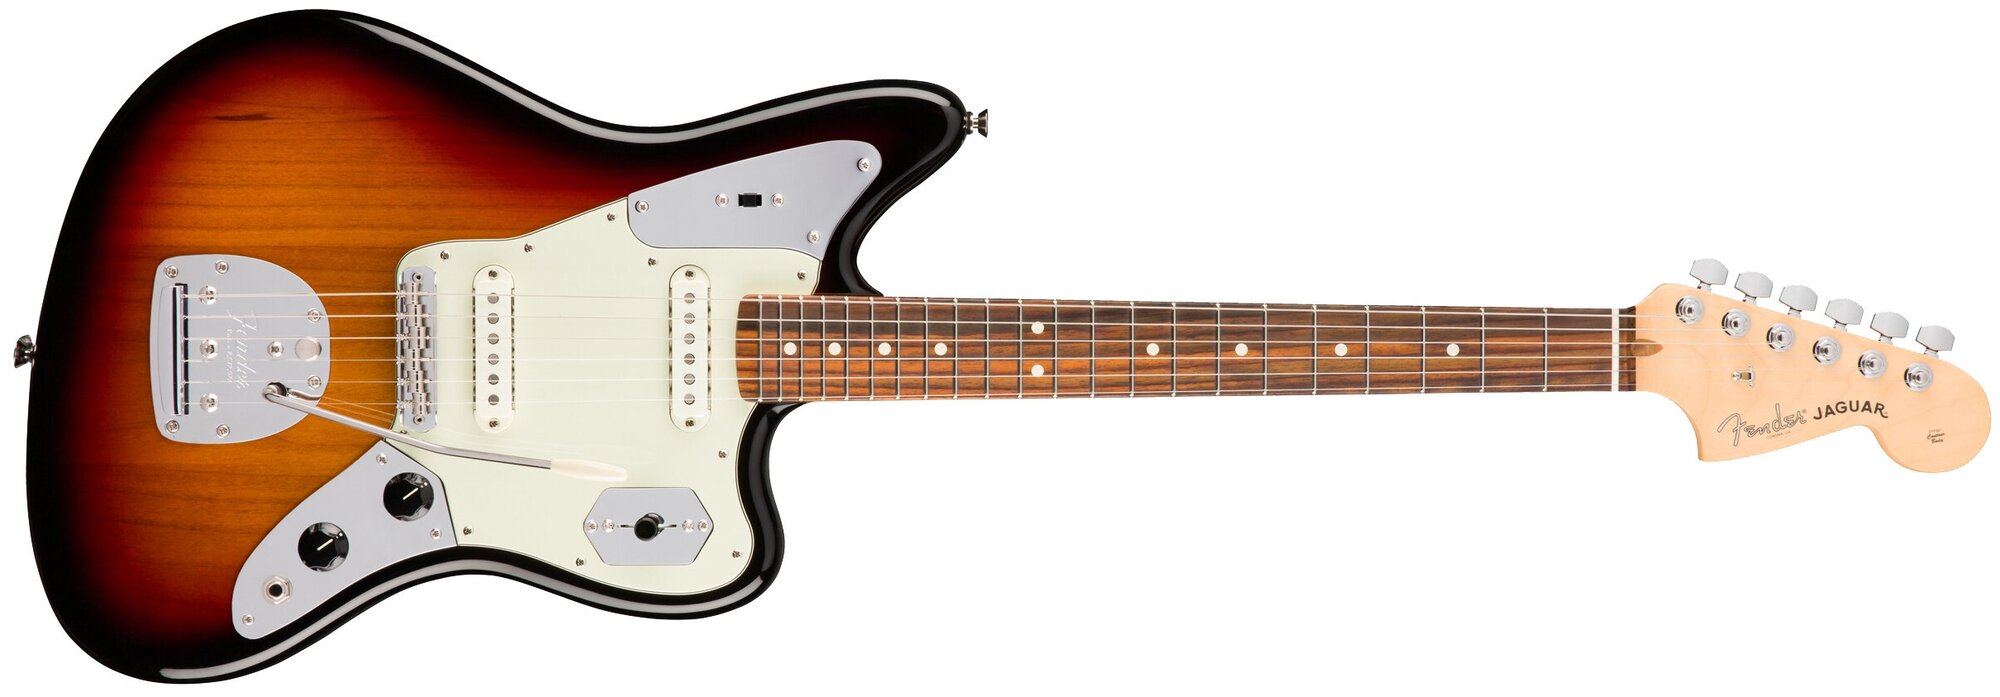 68750円 ついに再販開始 Fender american professional Jaguar